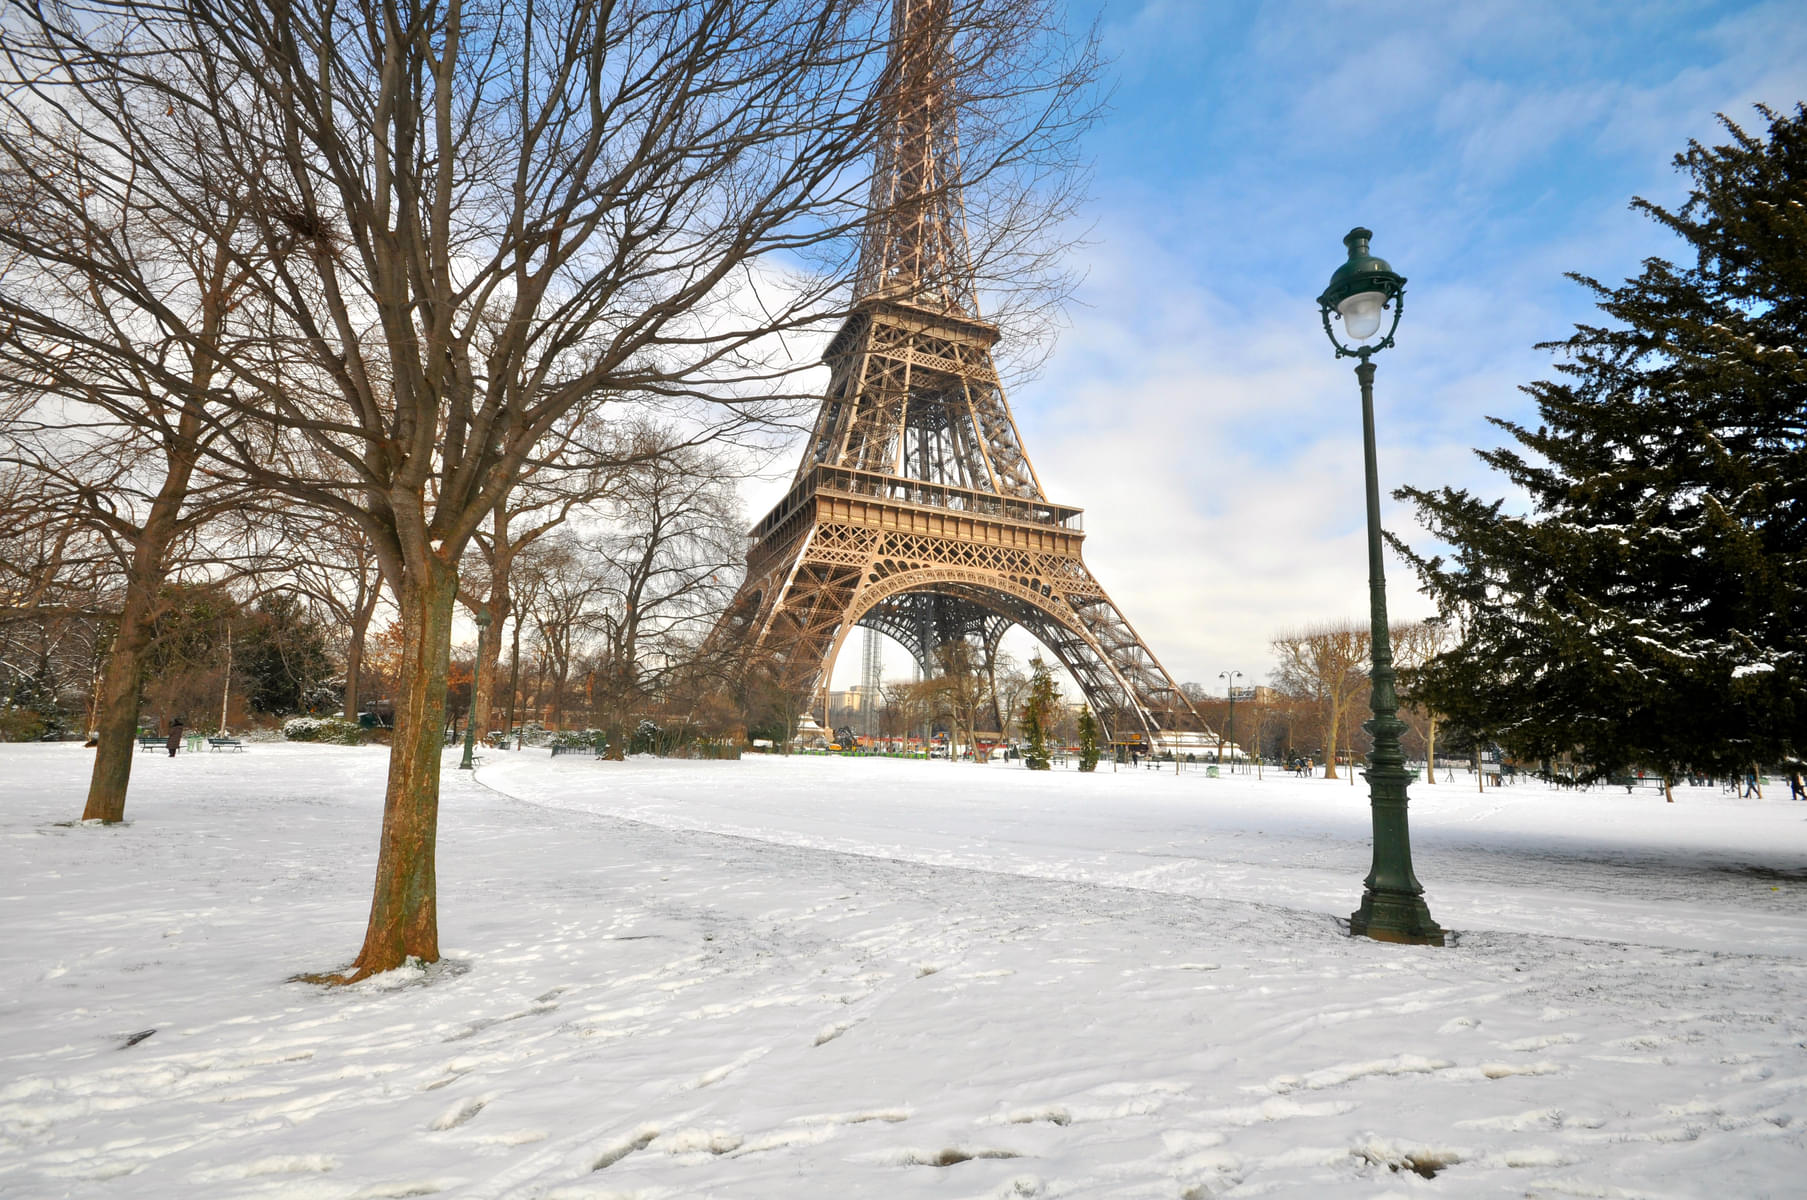 Paris in December